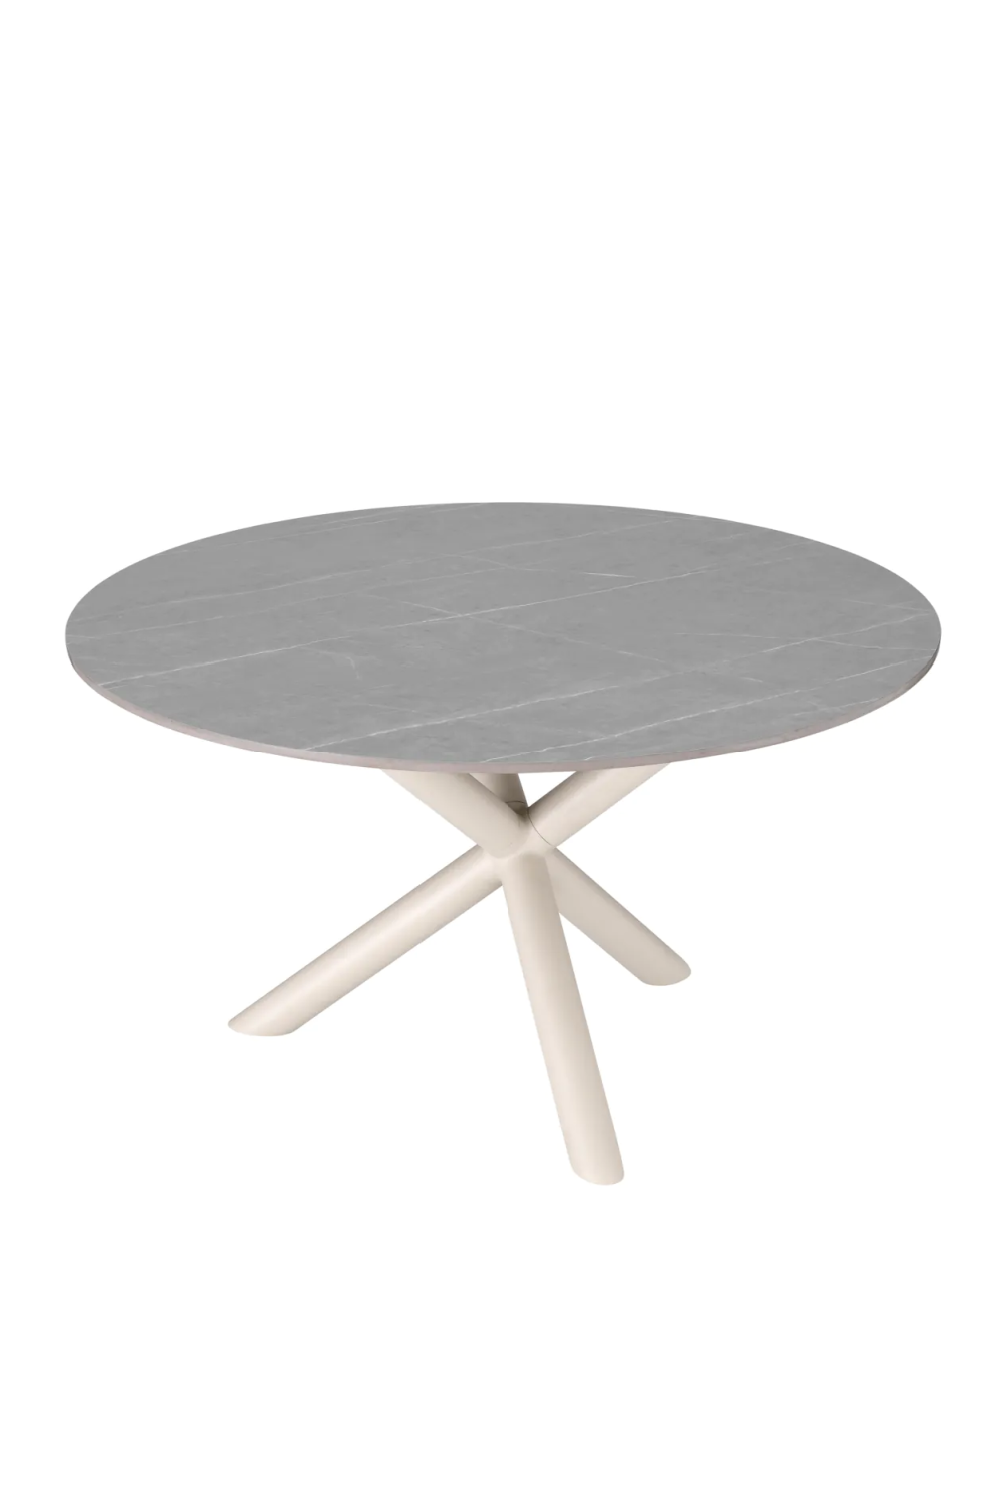 Round Ceramic Outdoor Dining Table | Eichholtz Nassau | Oroa.com